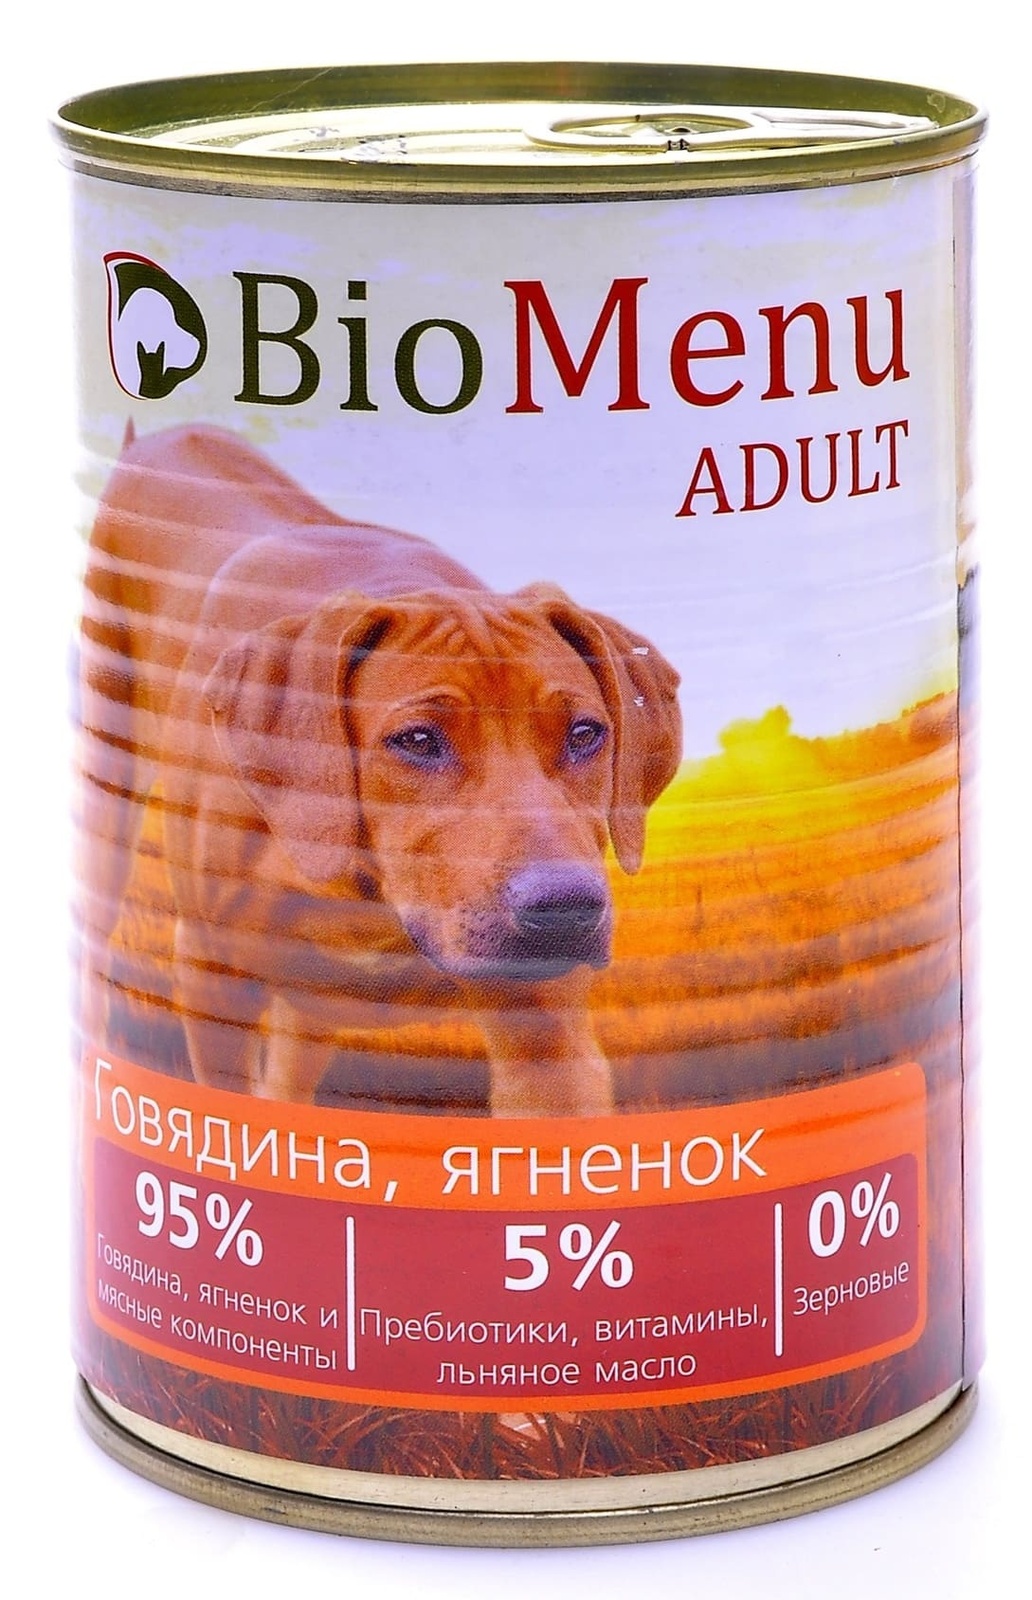 BioMenu BioMenu консервы для собак говядина и ягненок (100 г) biomenu консервы для собак тушеная говядина и ягненок 750гр